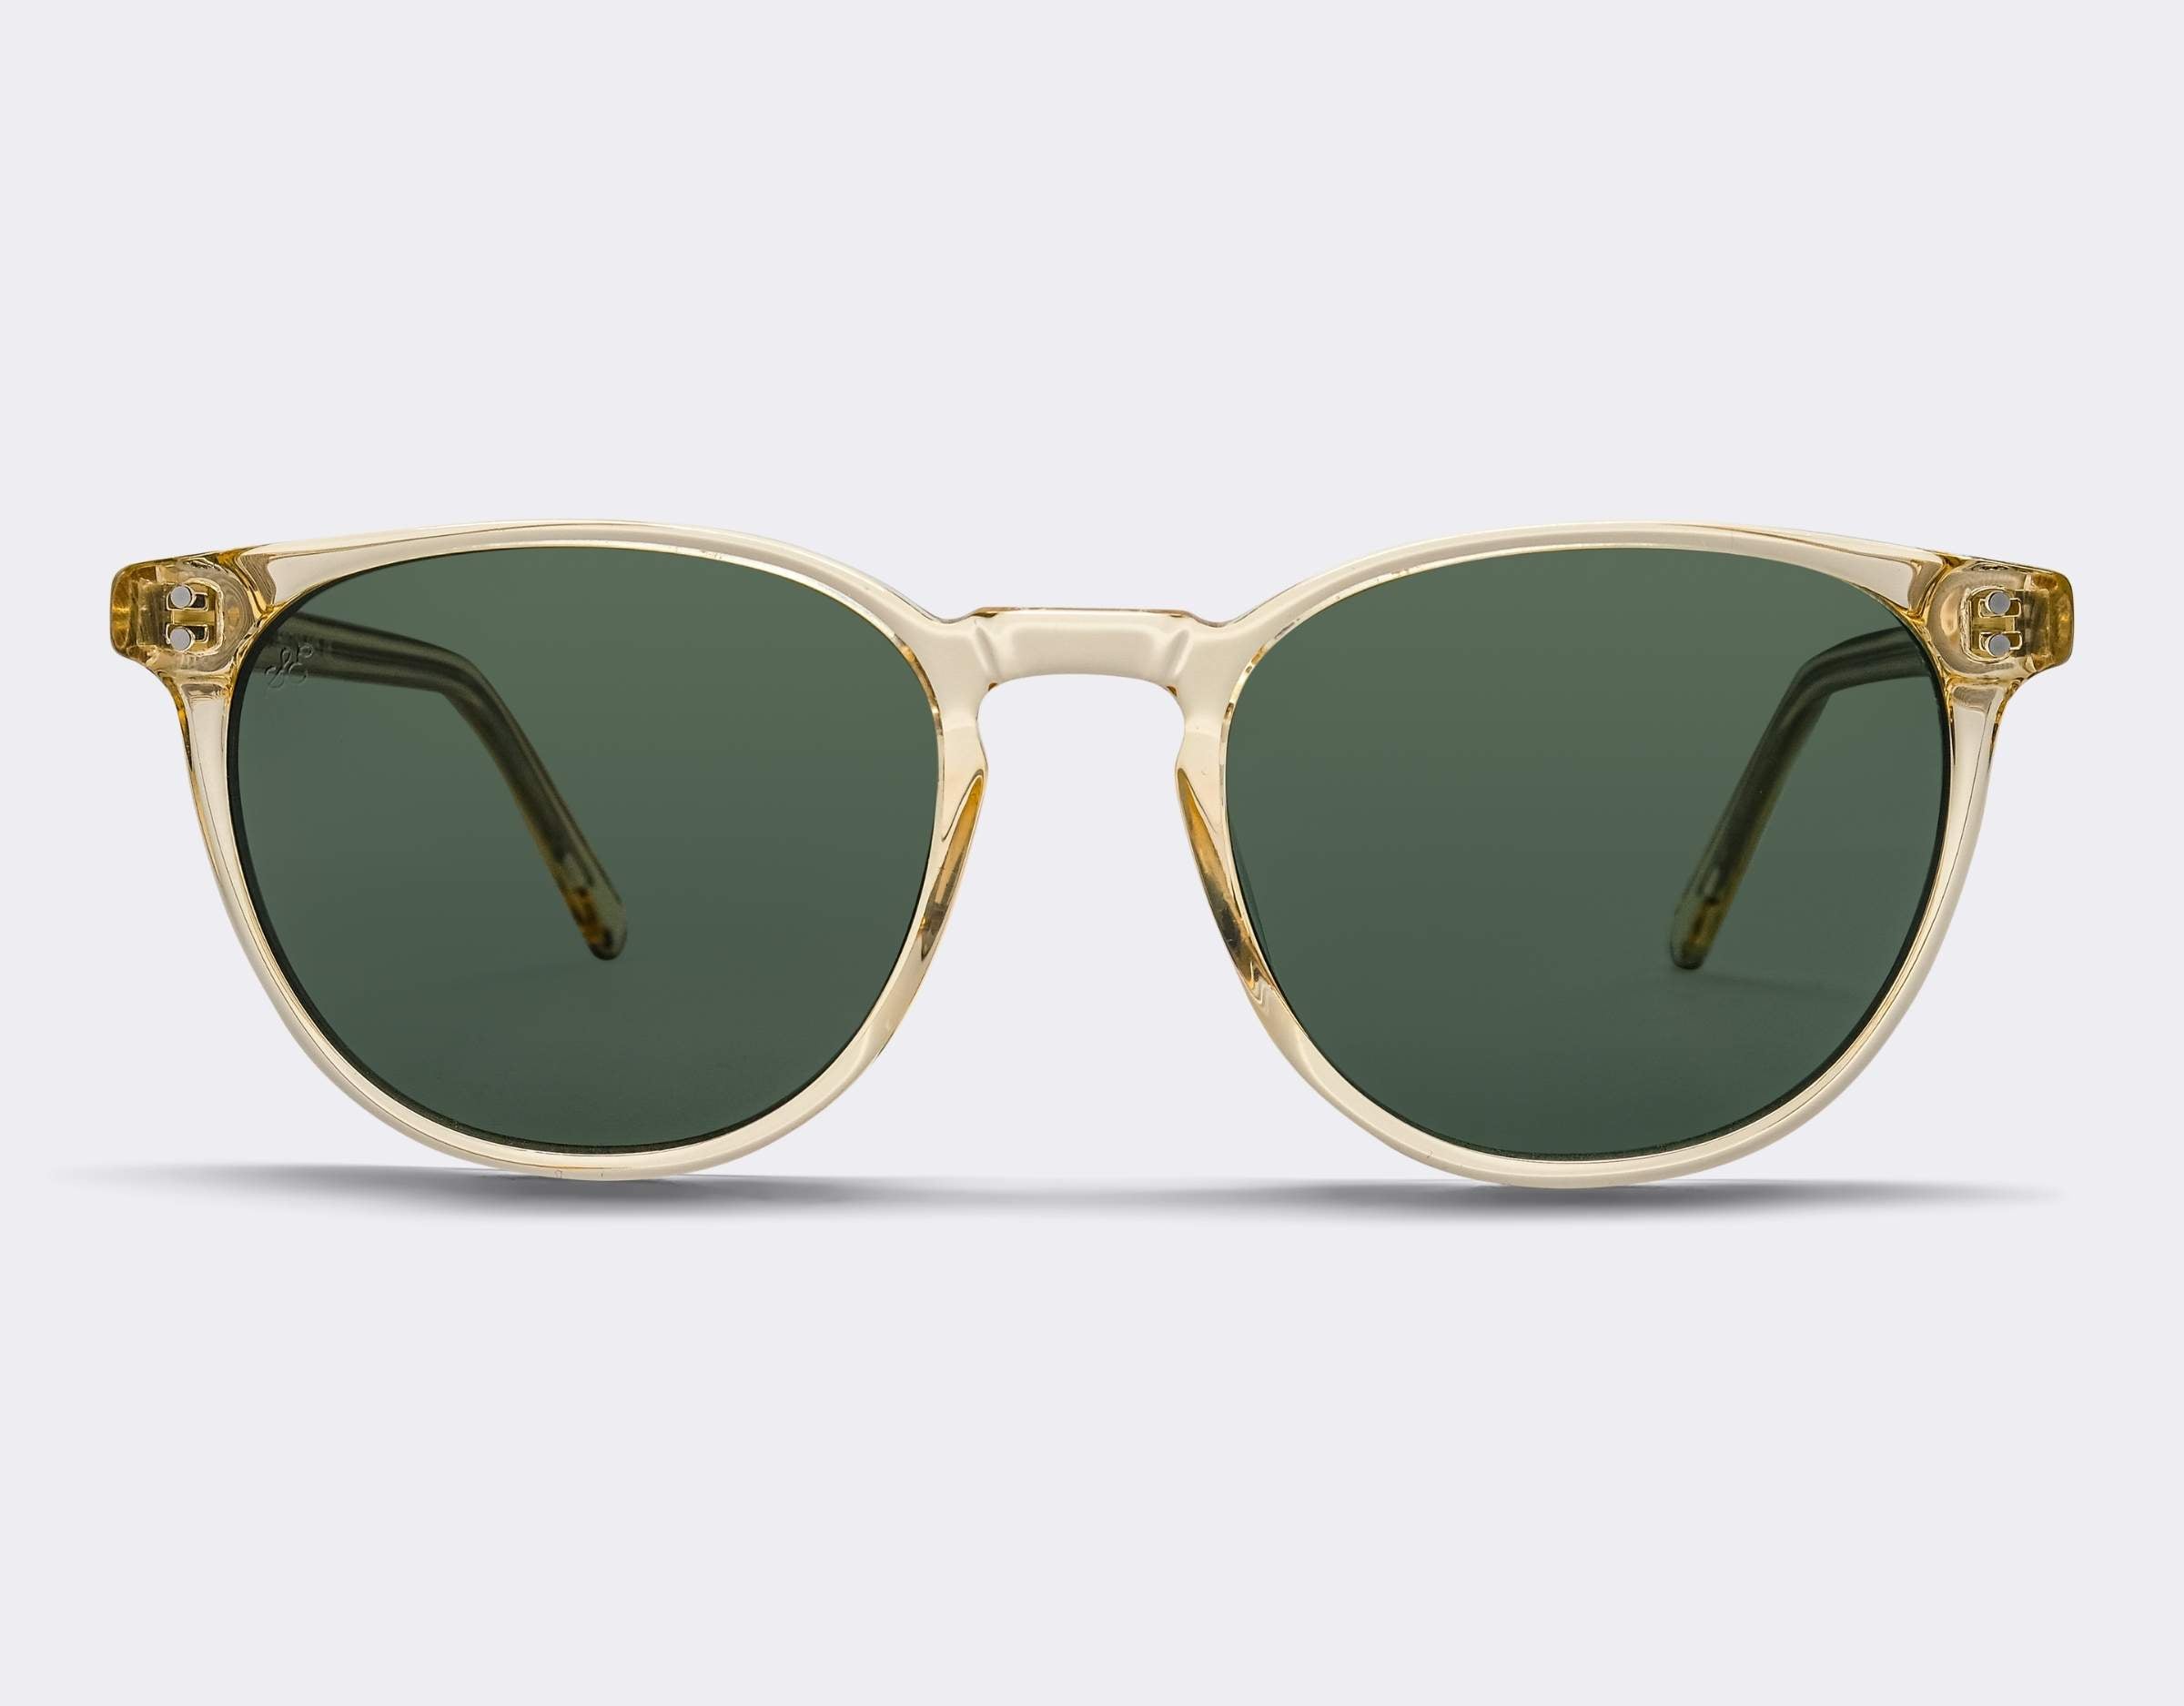 Glenelg Polarised Sunglasses SummerEyez Champagne Crystal - Olive Green 